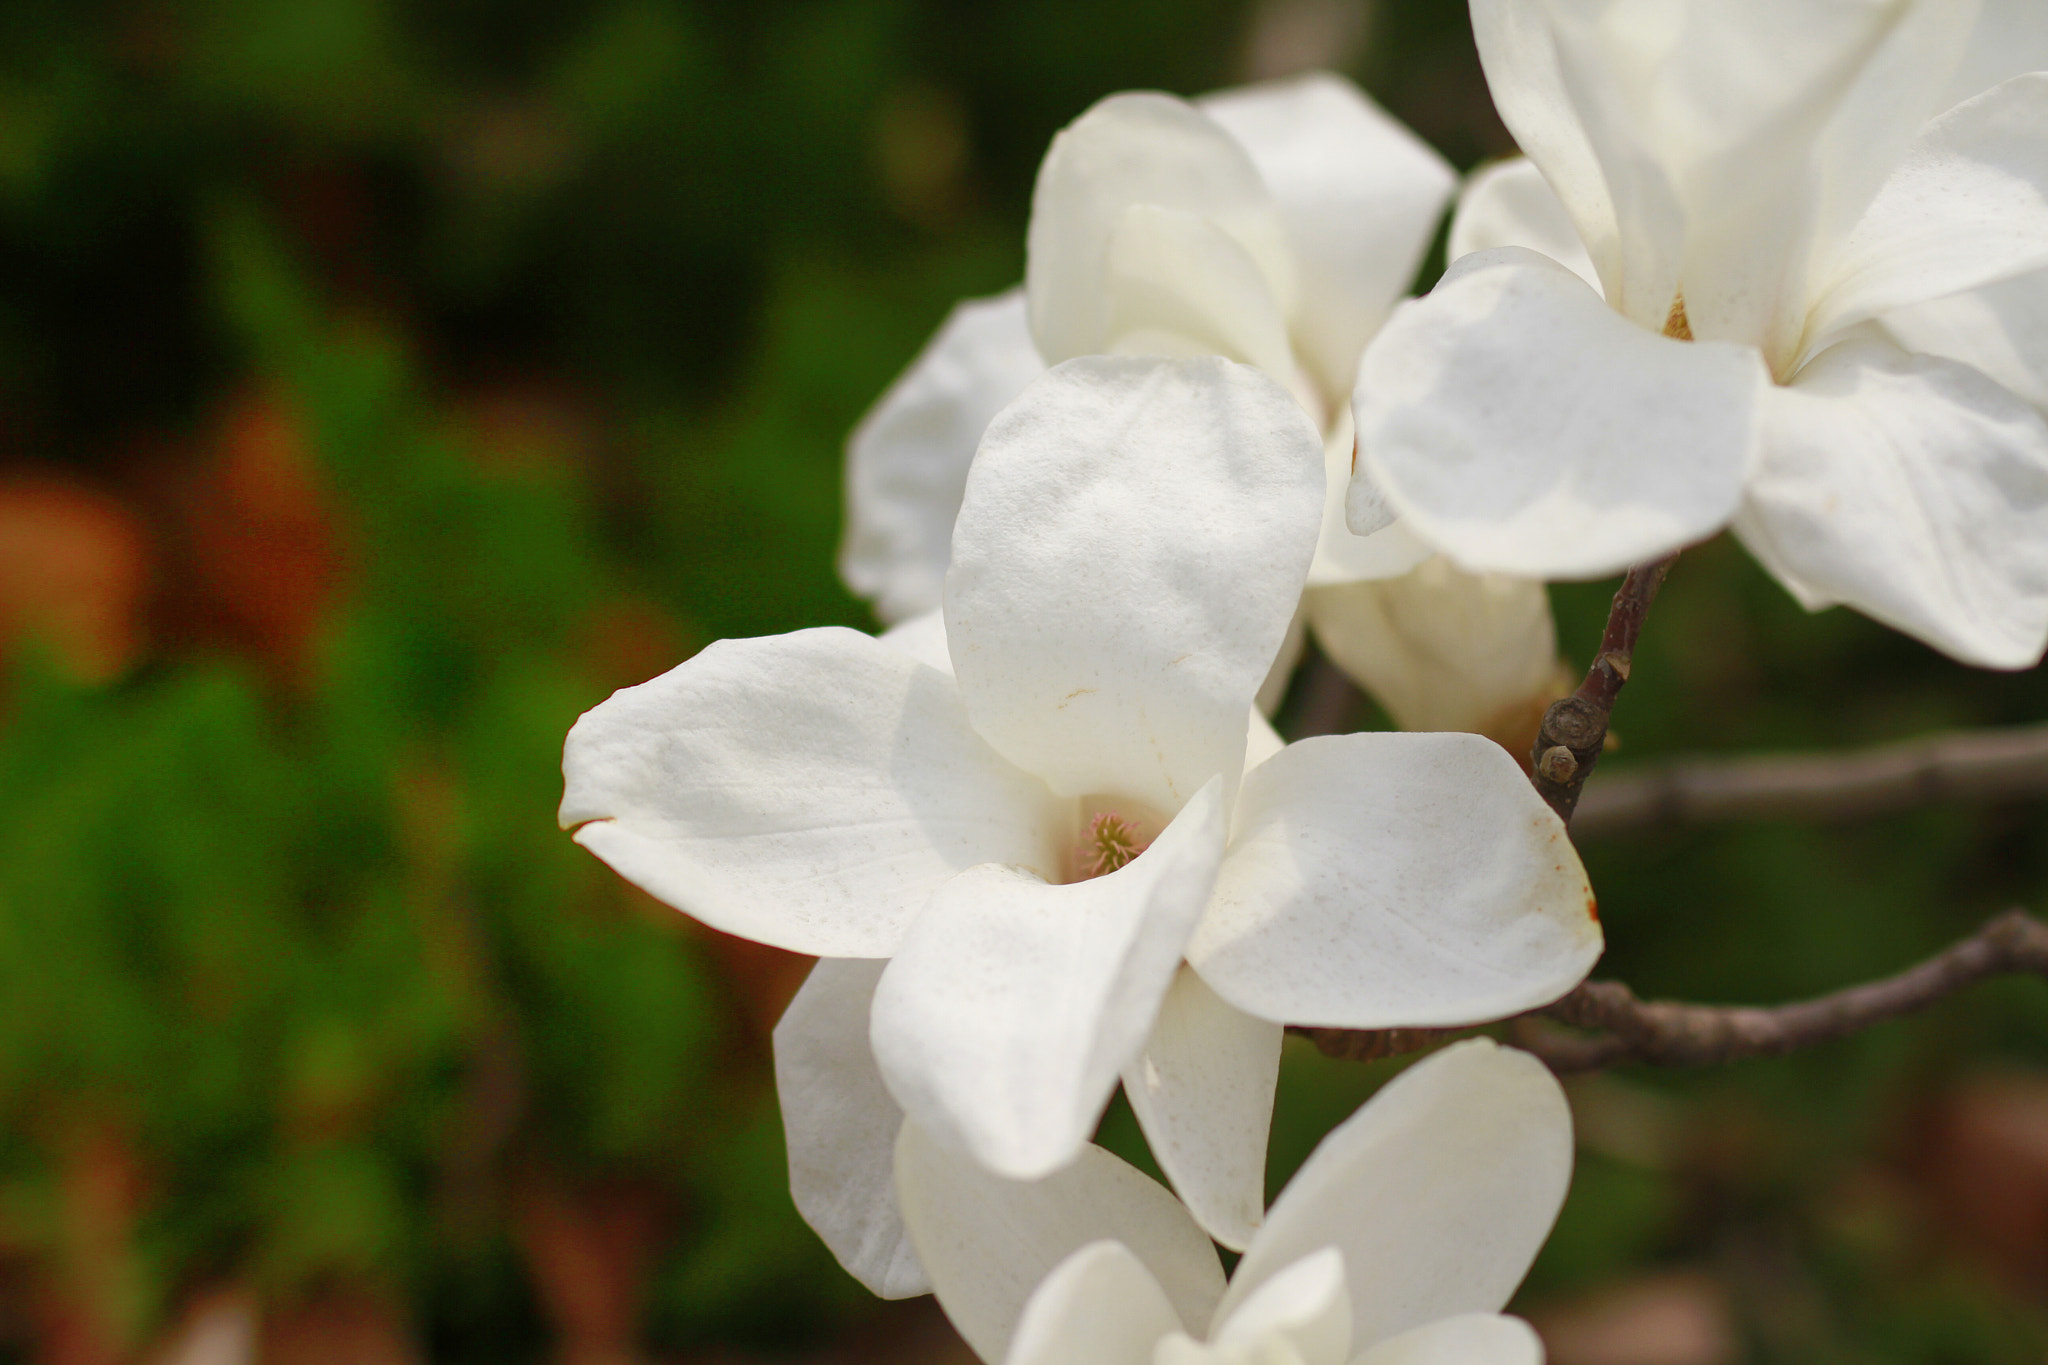 Canon EOS 7D sample photo. Yulan magnolia photography